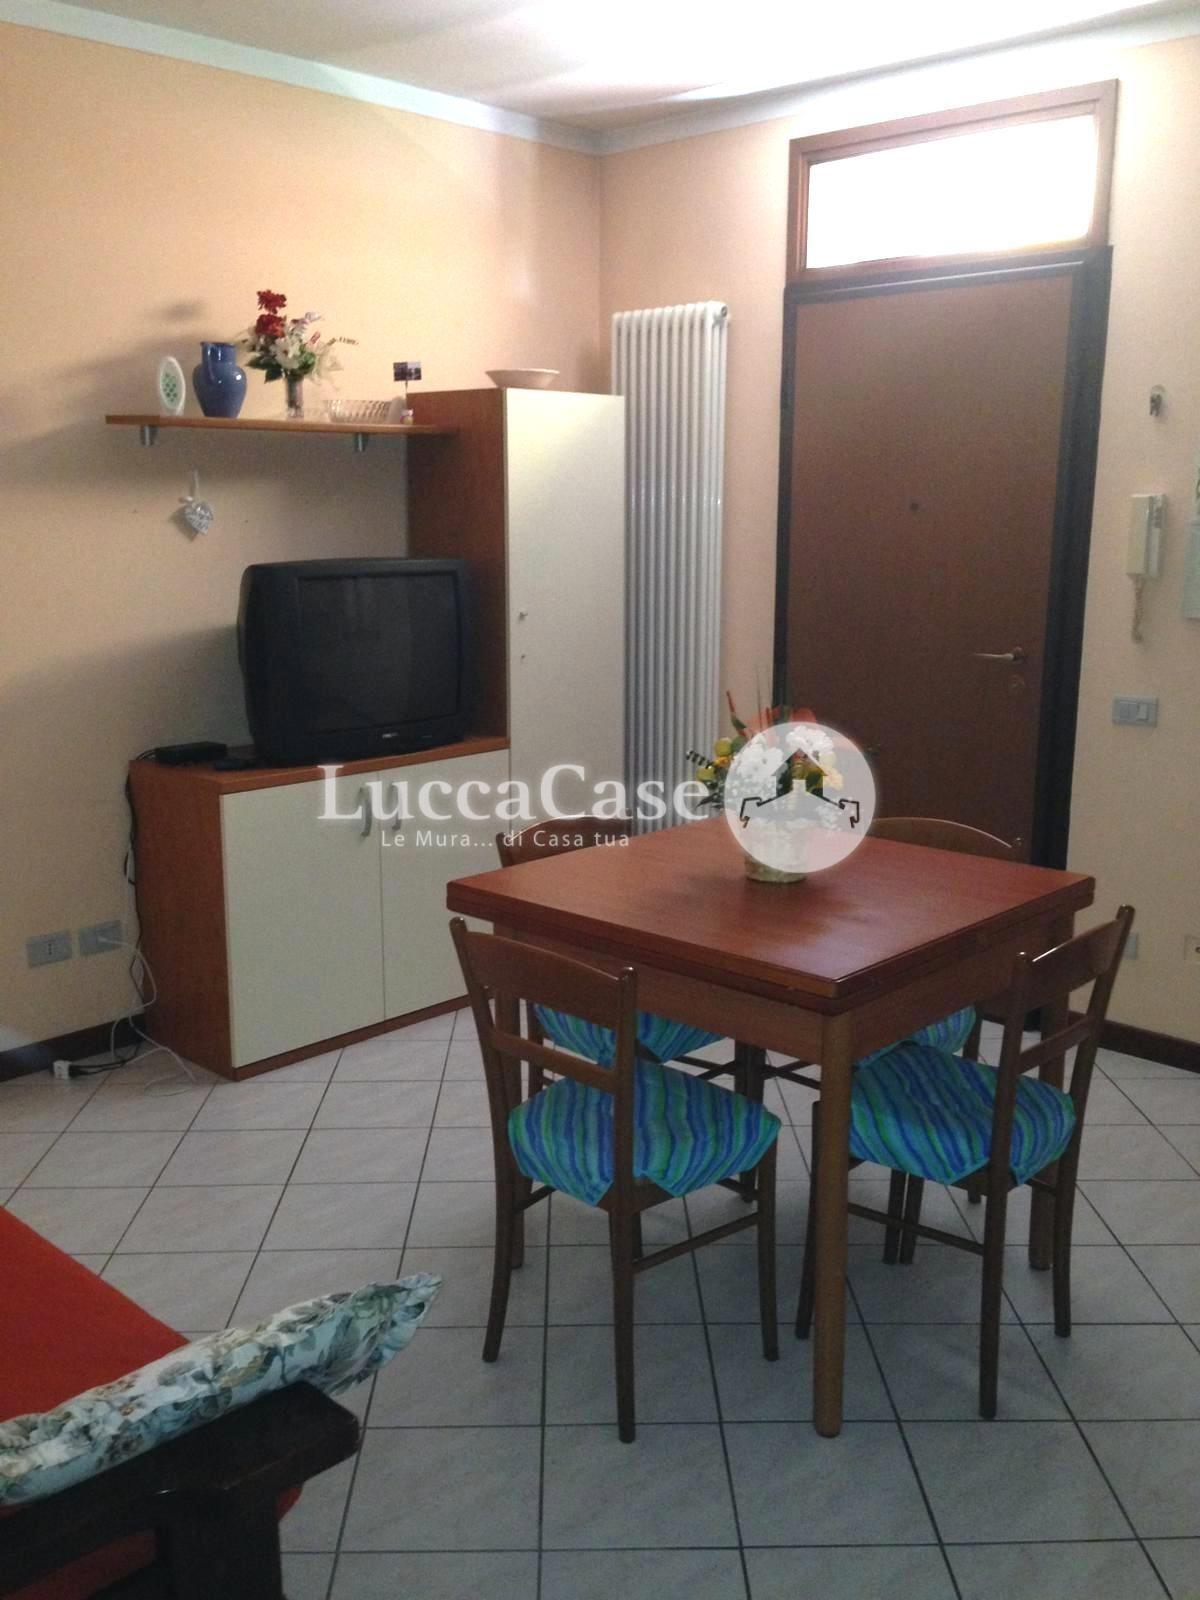 Apartment for sale in Altopascio (LU)